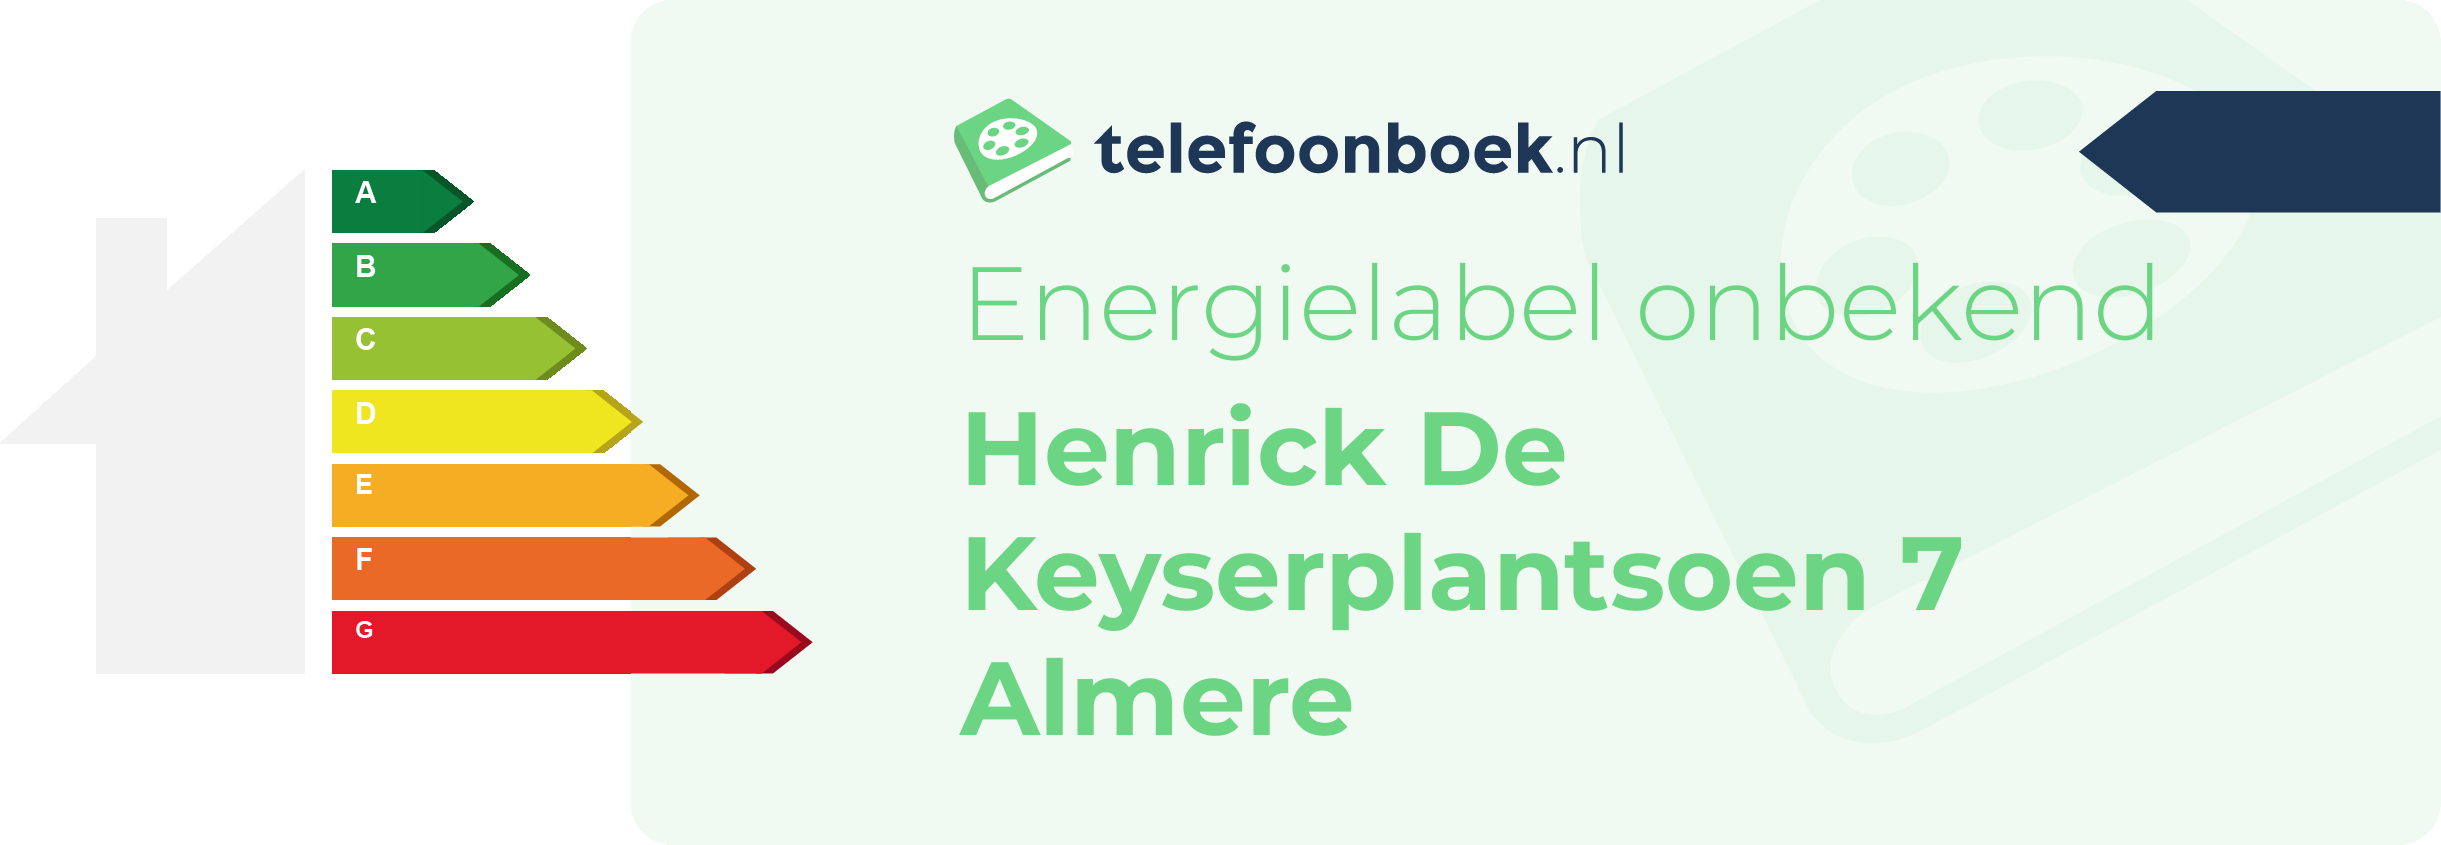 Energielabel Henrick De Keyserplantsoen 7 Almere